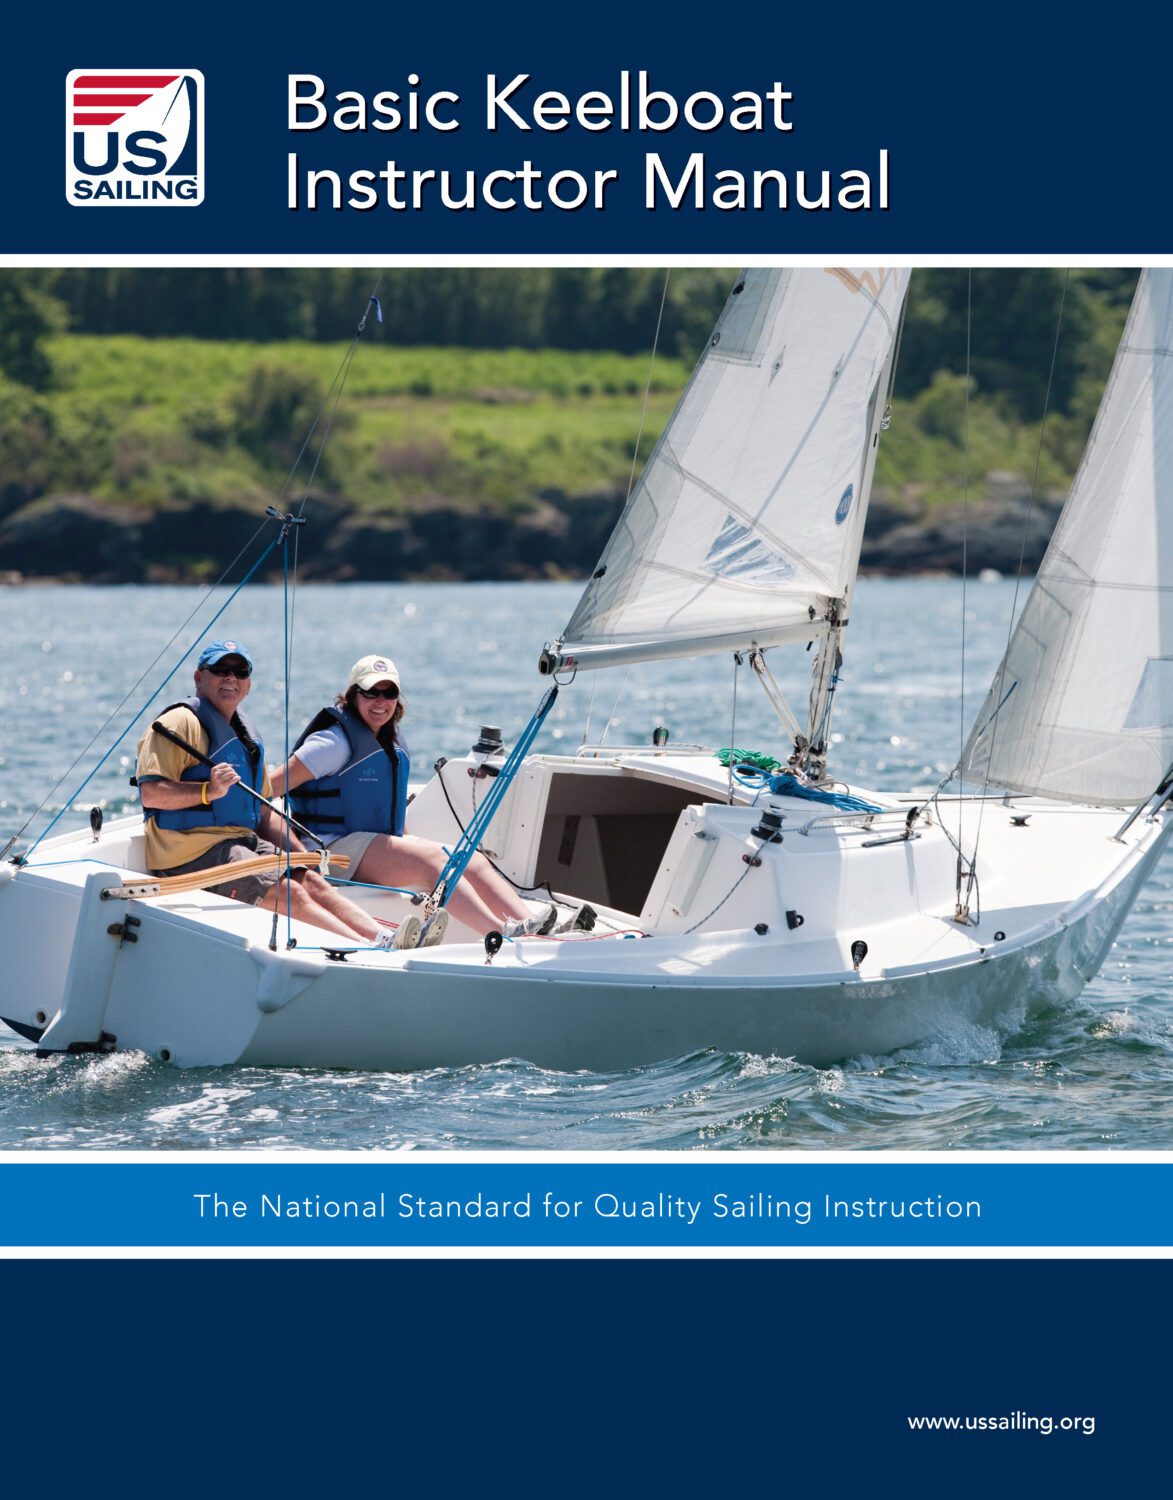 Basic Keelboat Instructional Manual